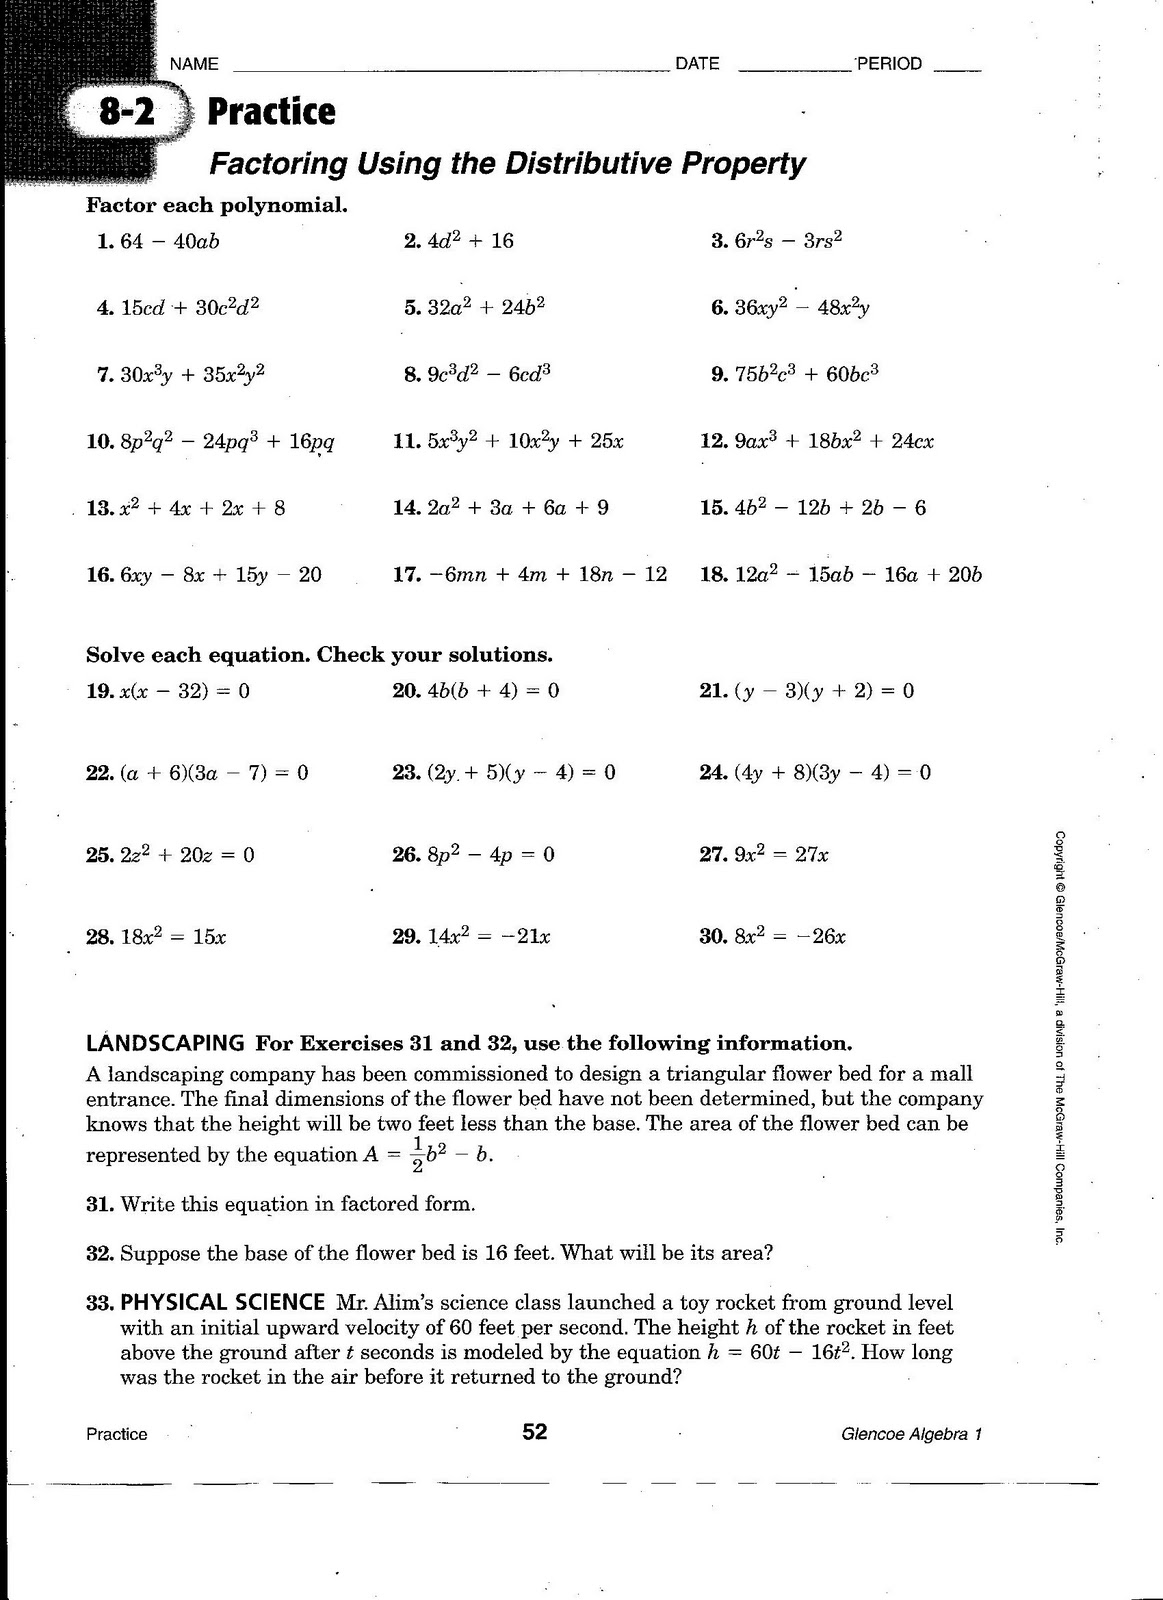 50 Printable Algebra 1 Worksheets 29